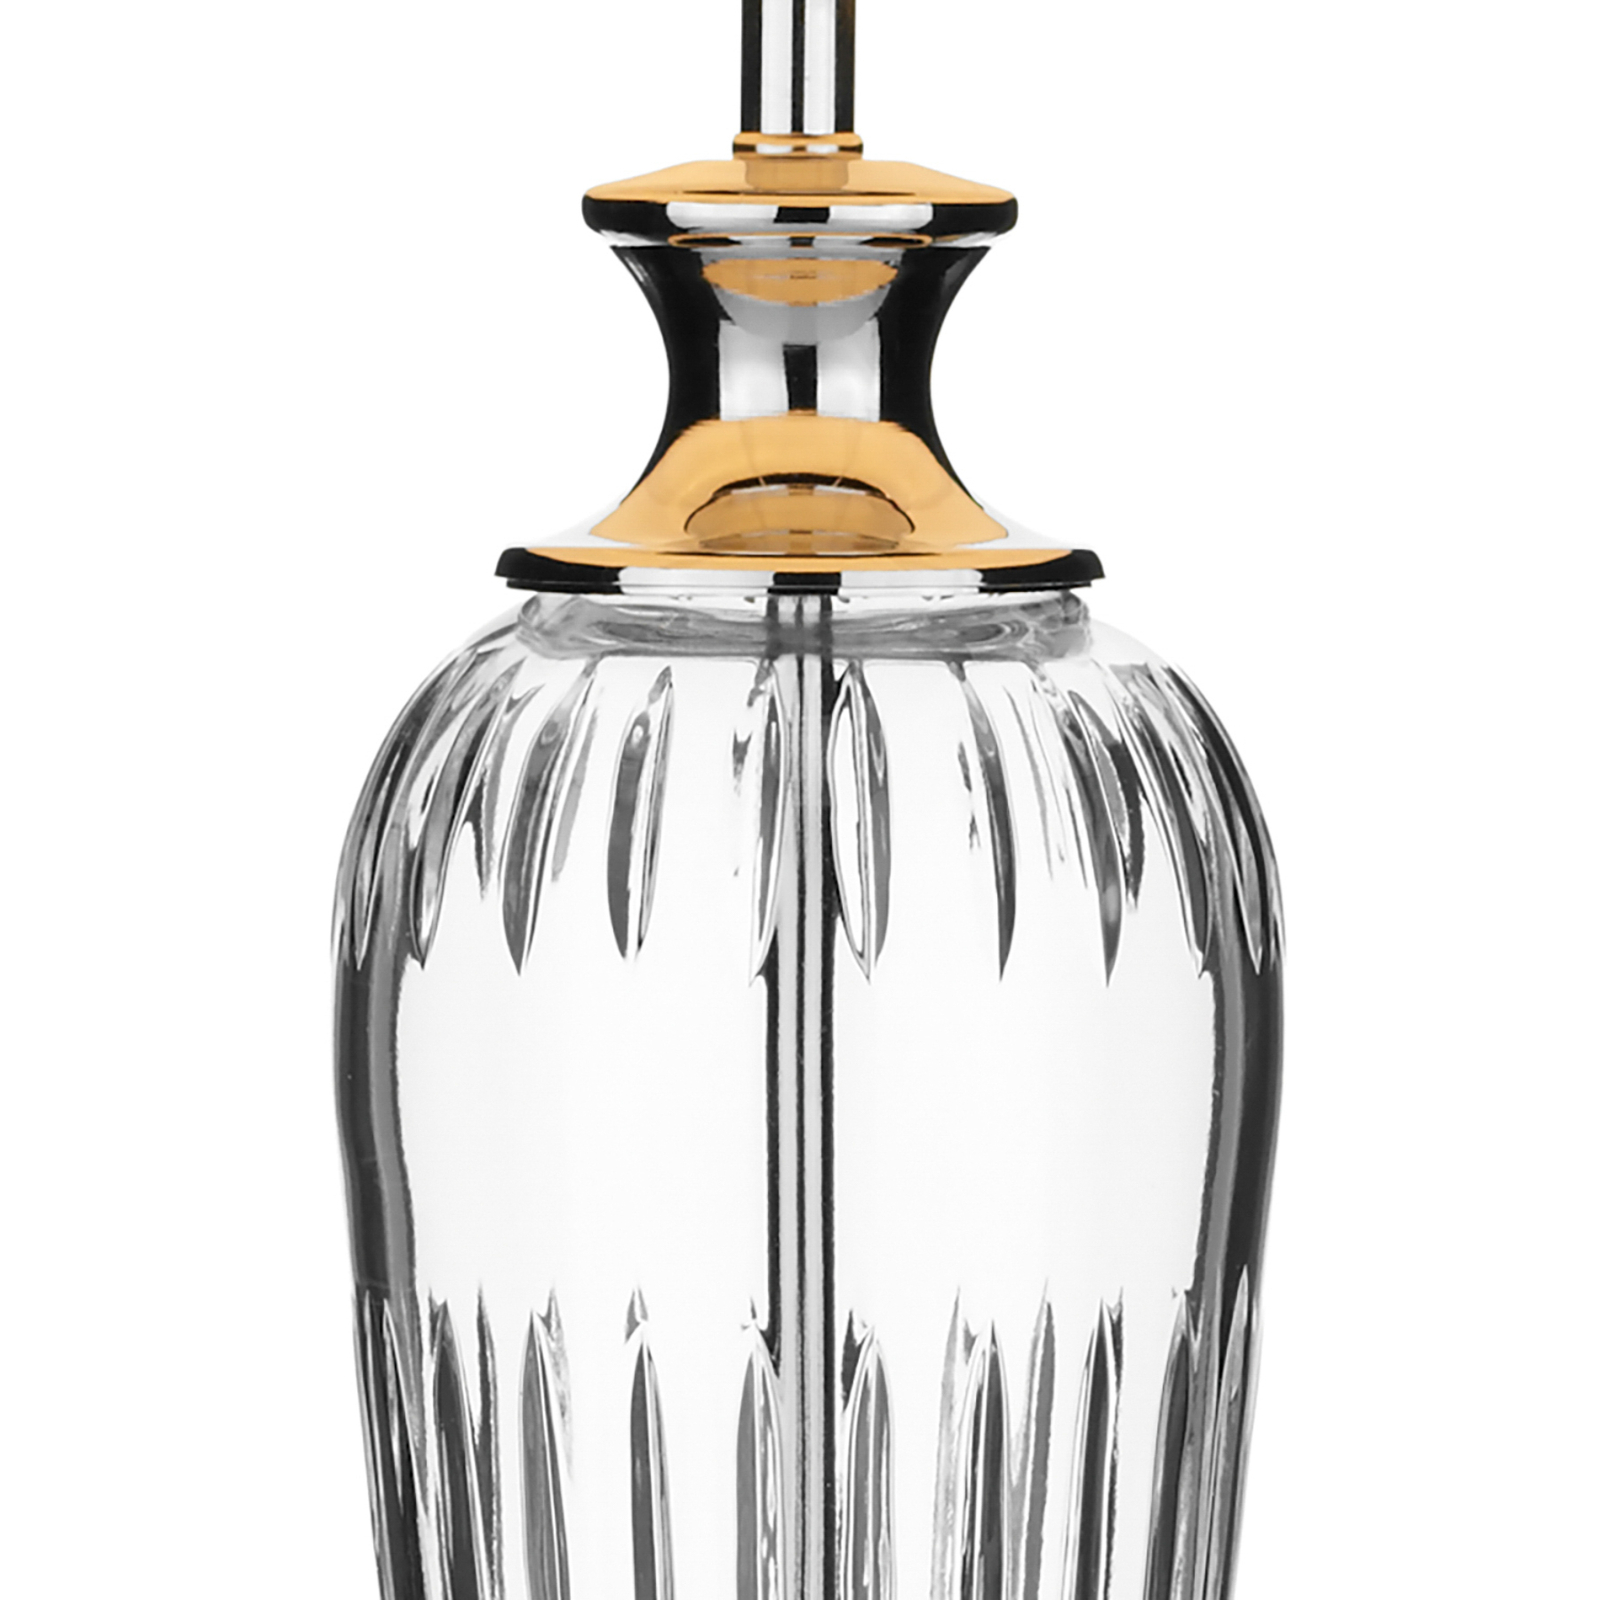 "Hinton" stalinė lempa su stikliniu pagrindu ir medžiaginiu gaubtu